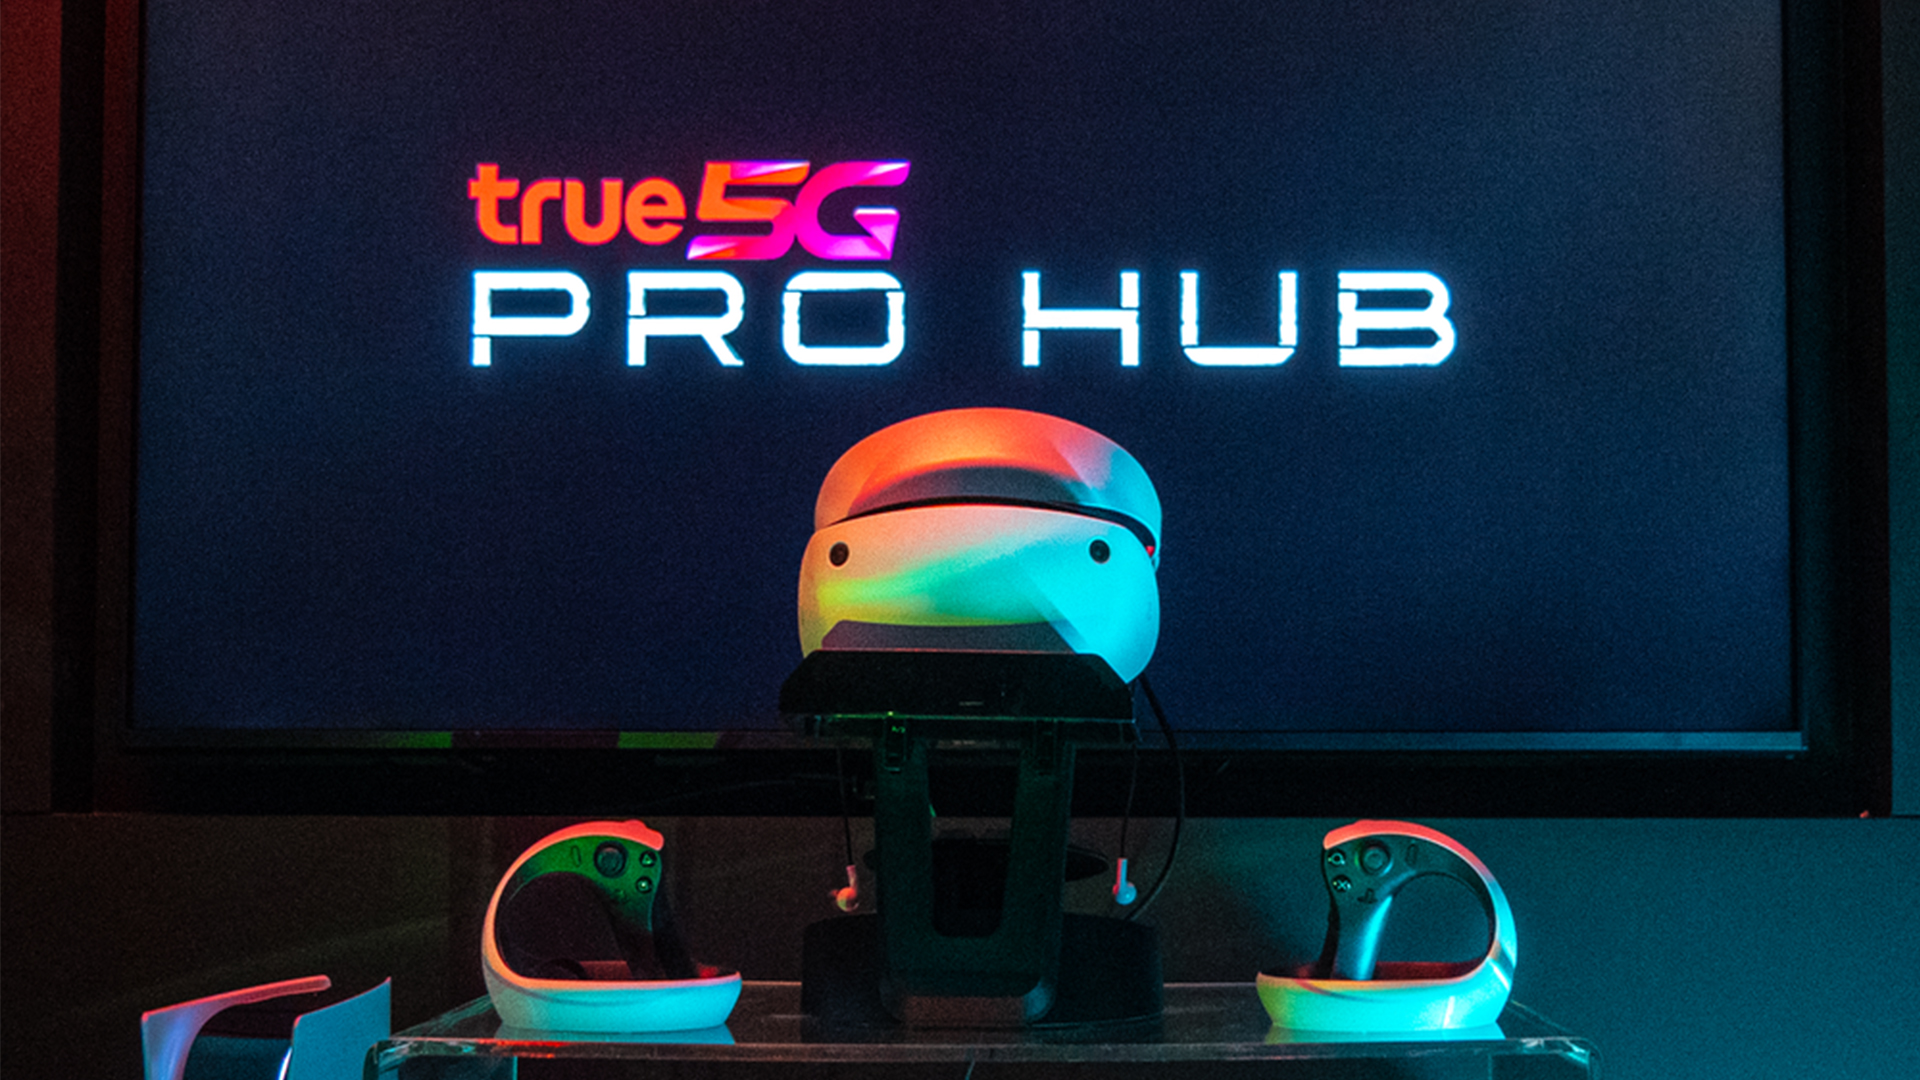 True5G PRO HUB – ‘ยาน’ สำหรับสายเกมและไลฟ์สไตล์ เปิดให้เข้าใช้งานแล้ววันนี้ !